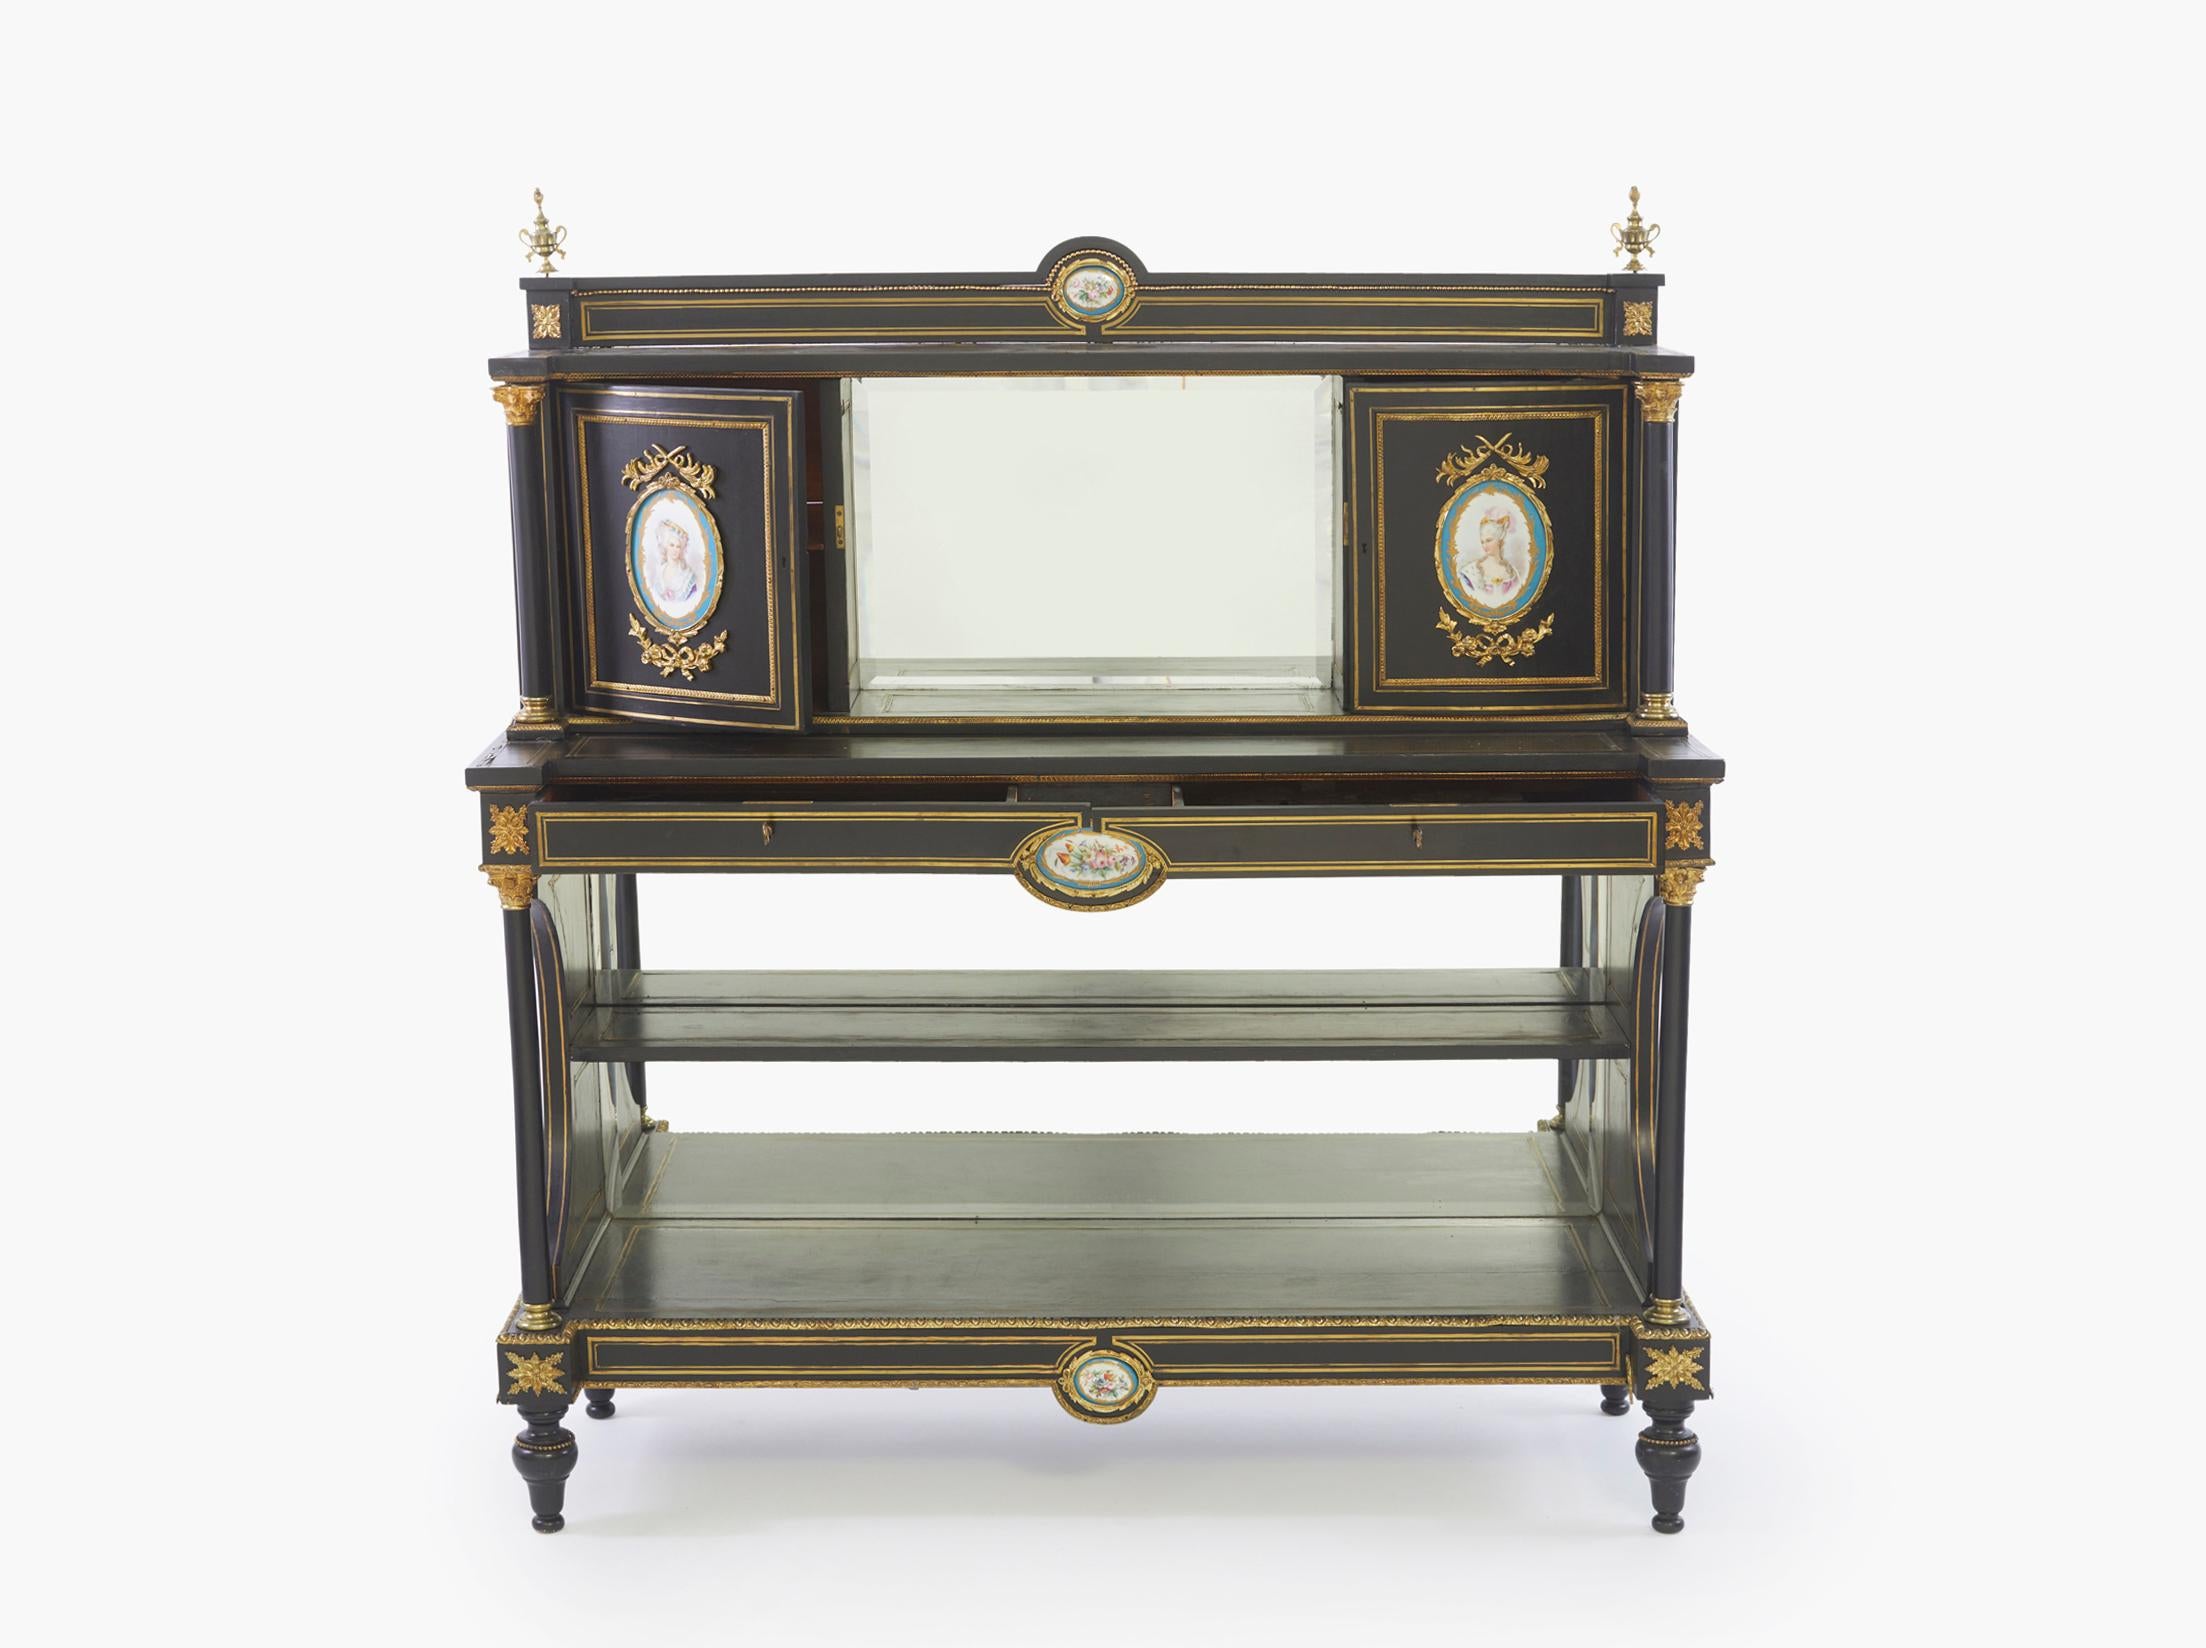 Buffet de style Louis XVI du milieu du XIXe siècle en bois peint en noir et doré sculpté de forme rectangulaire allongée, avec un dos central en miroir flanqué de deux plaques de portraits en porcelaine dans un cartouche d'acanthe doré avec des